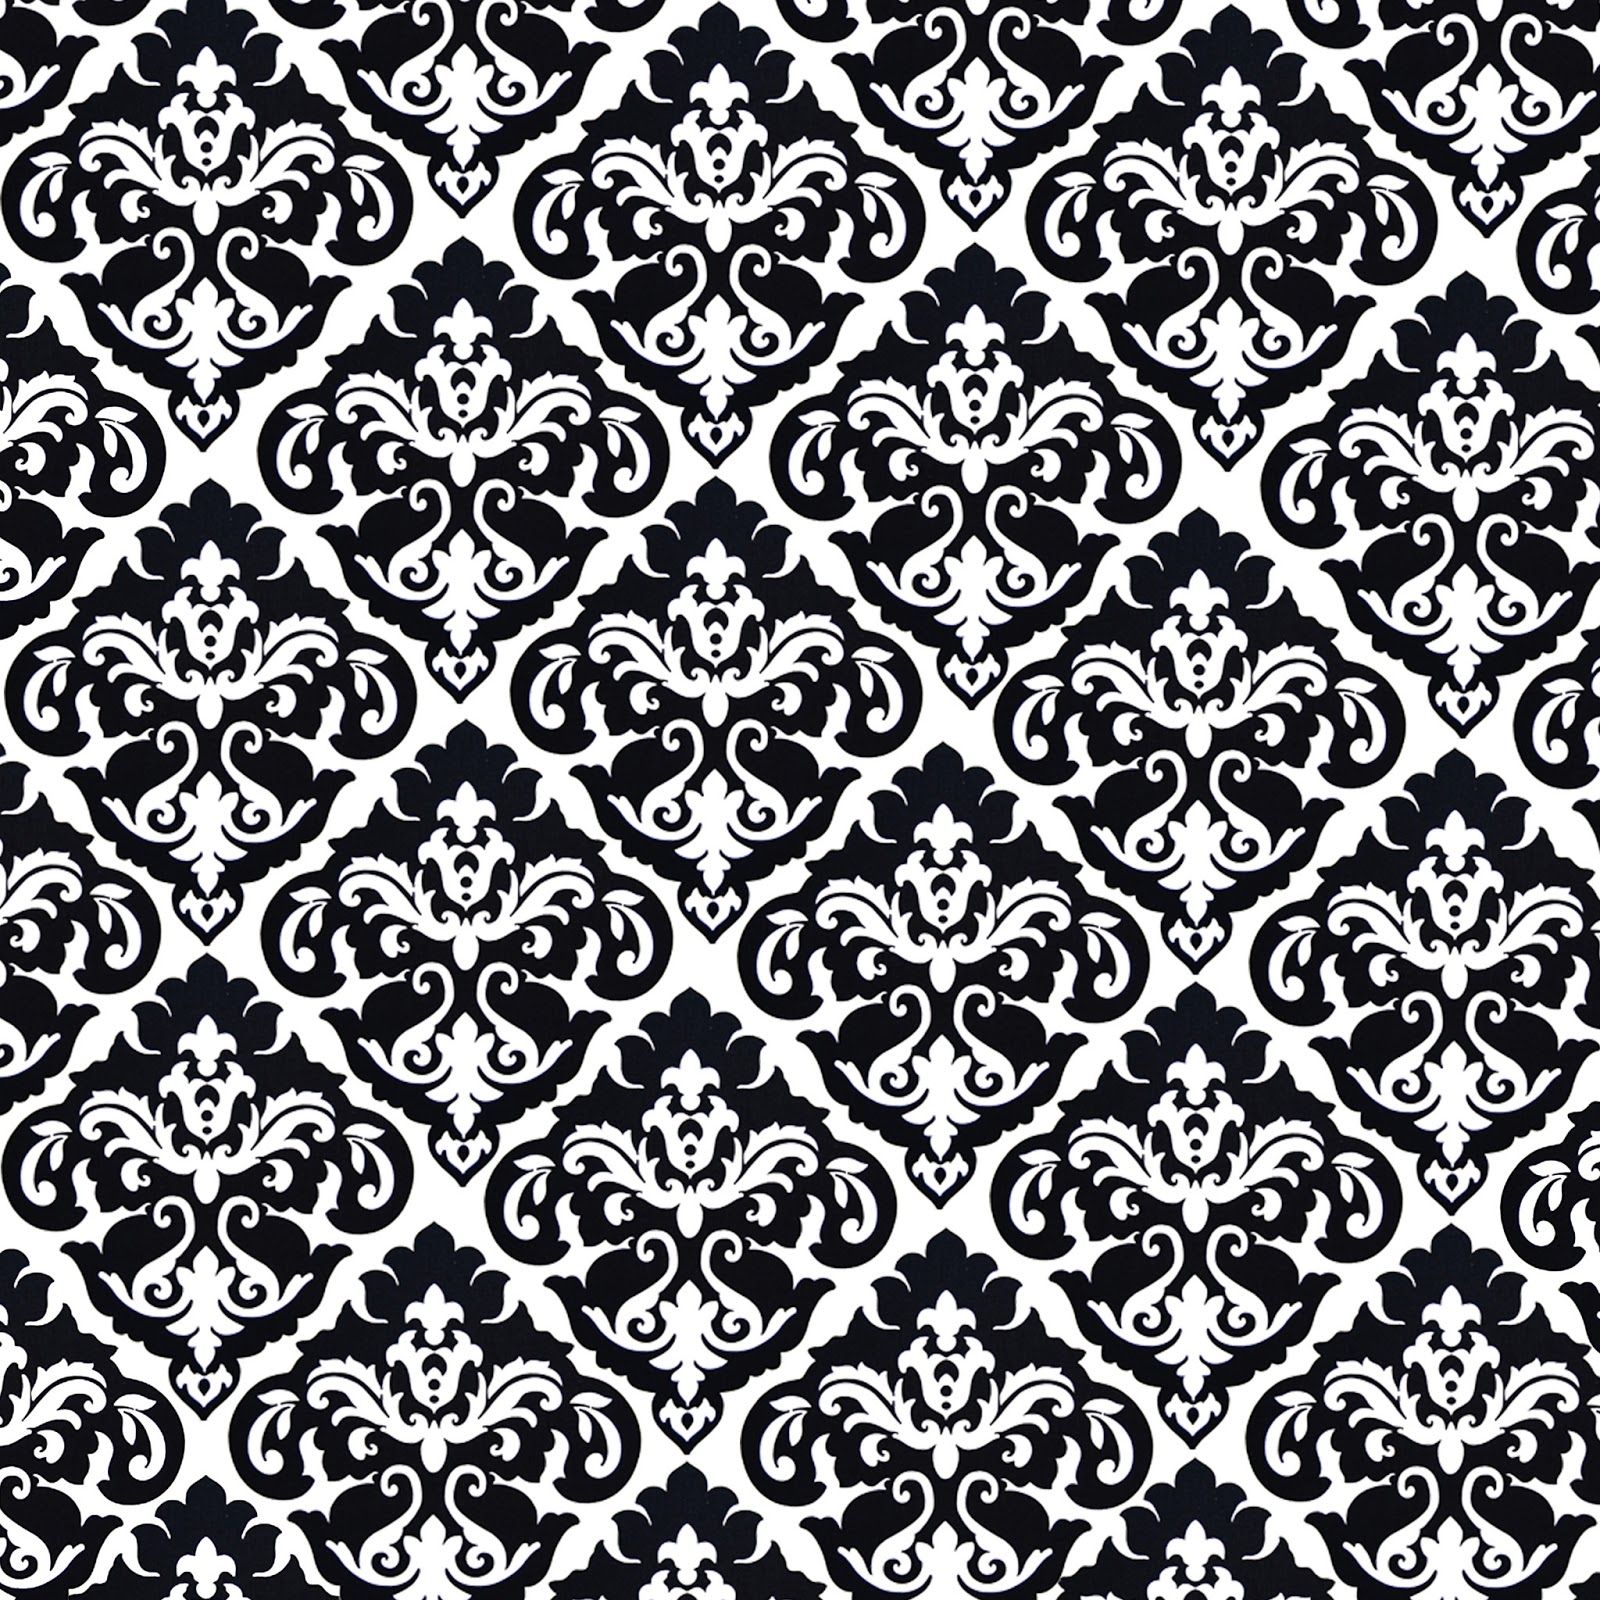 Background Wallpaper Black And White Vintage Pattern Stmoh0e1 Jpg